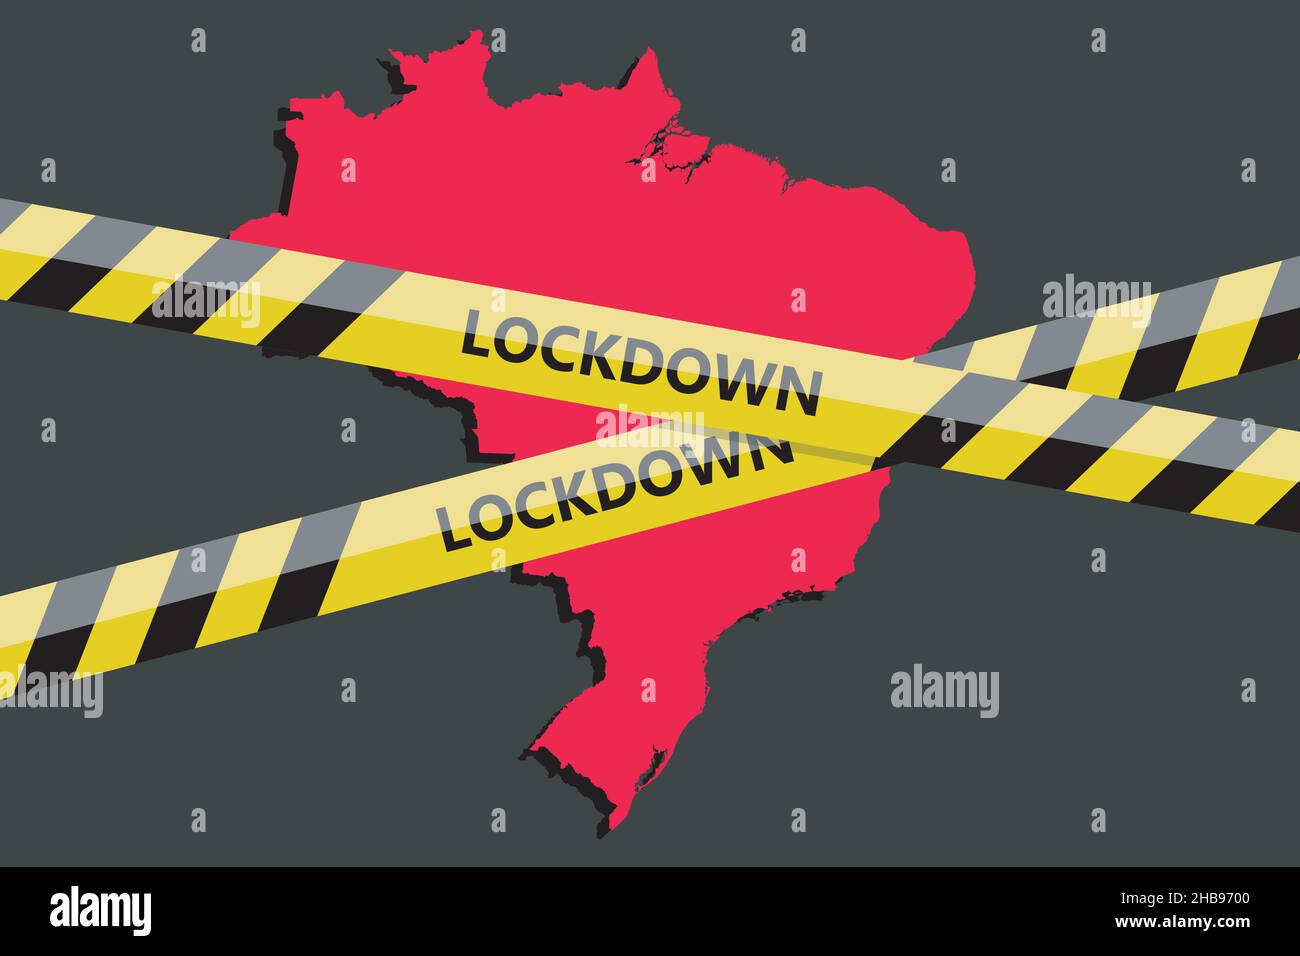 lockdown tape over Brasil Brasilian state silhouette. Coronavirus threat. Concept image. Vector illustration Stock Vector